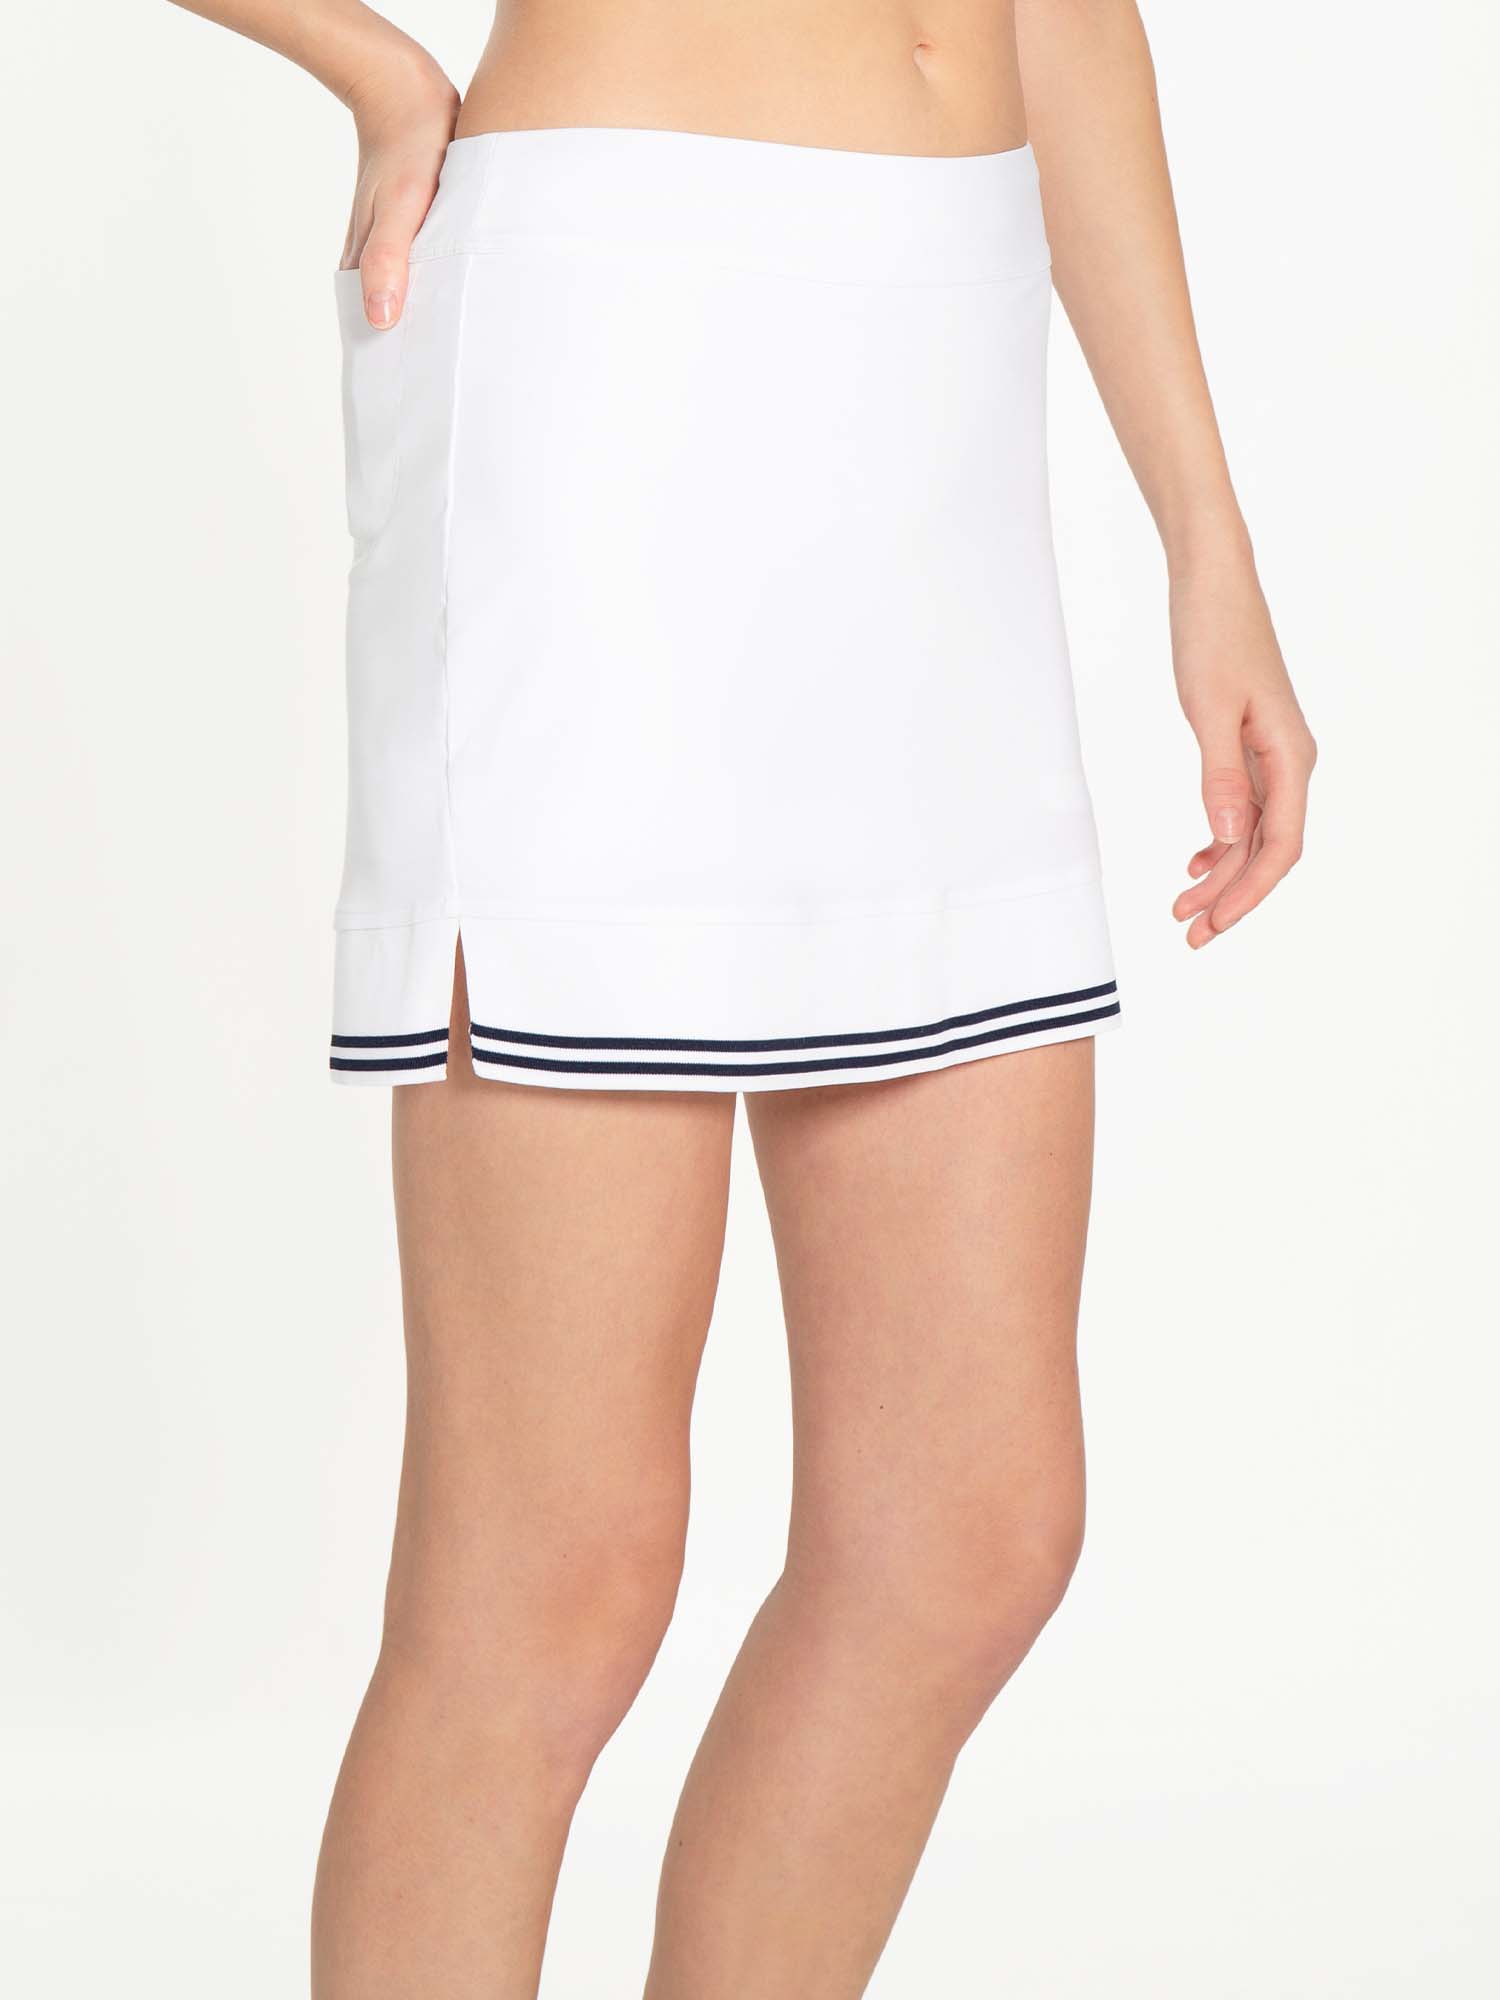 Lilian 15" Skirt - White/Militare